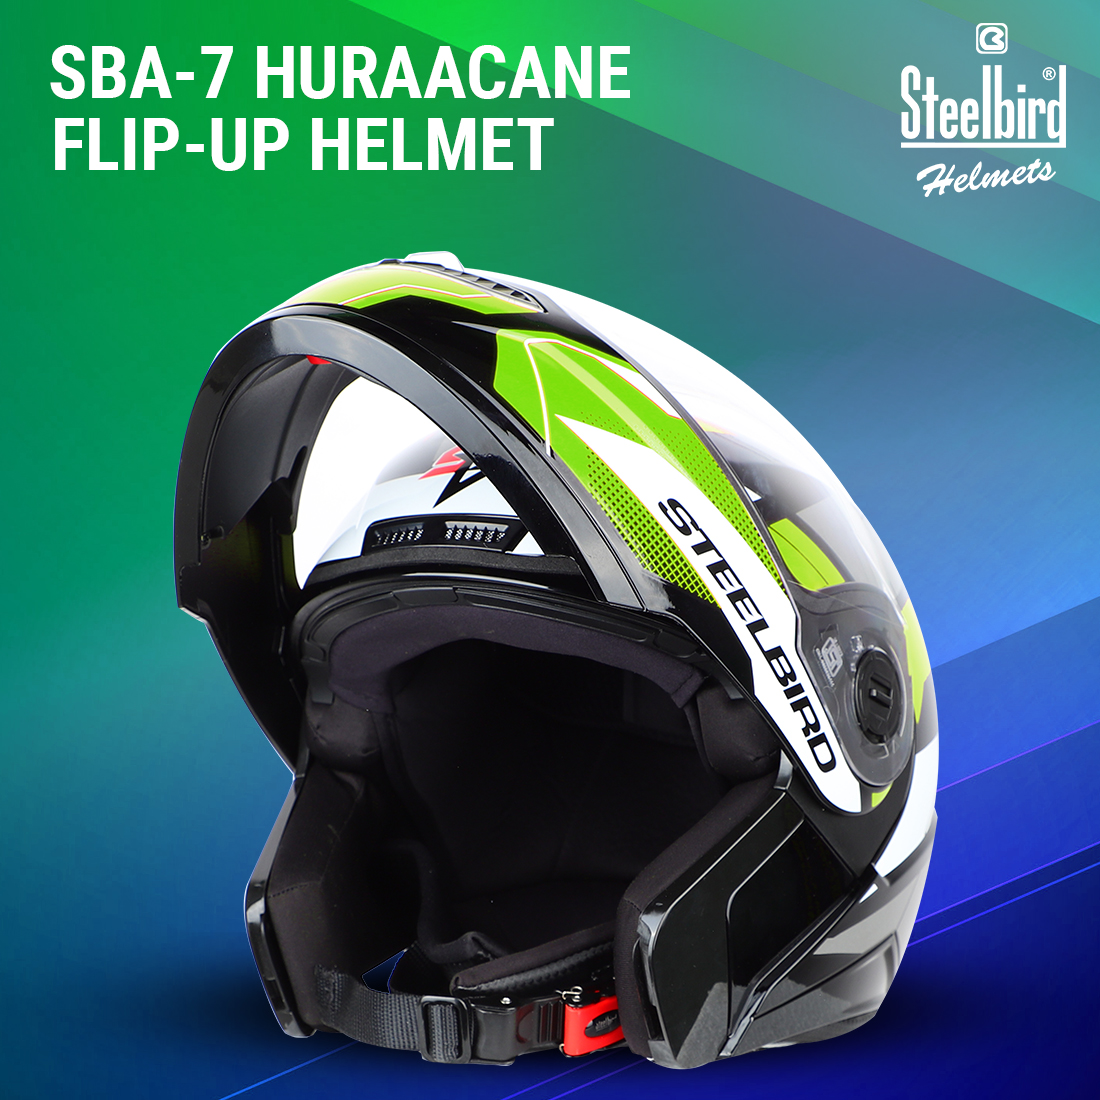 Steelbird SBA-7 Huracan ISI Certified Flip-Up Helmet For Men And Women (Matt Black Neon With Clear Visor)